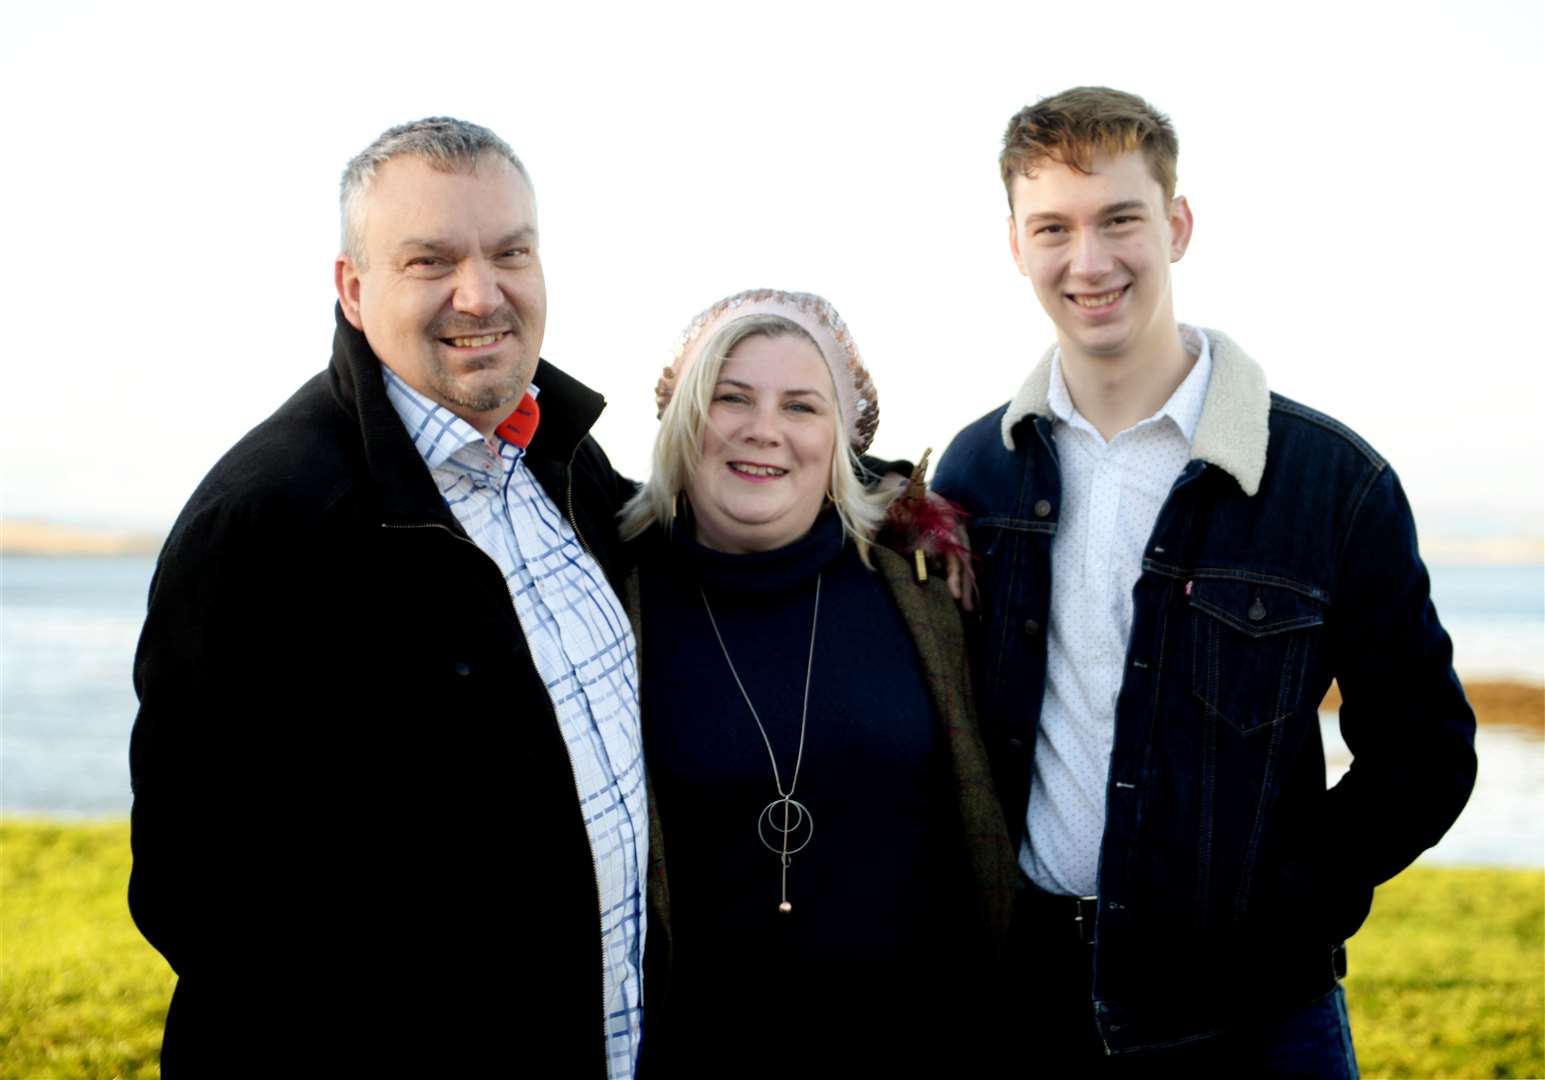 Ross Halkett with his parents, Robbie and Karen.